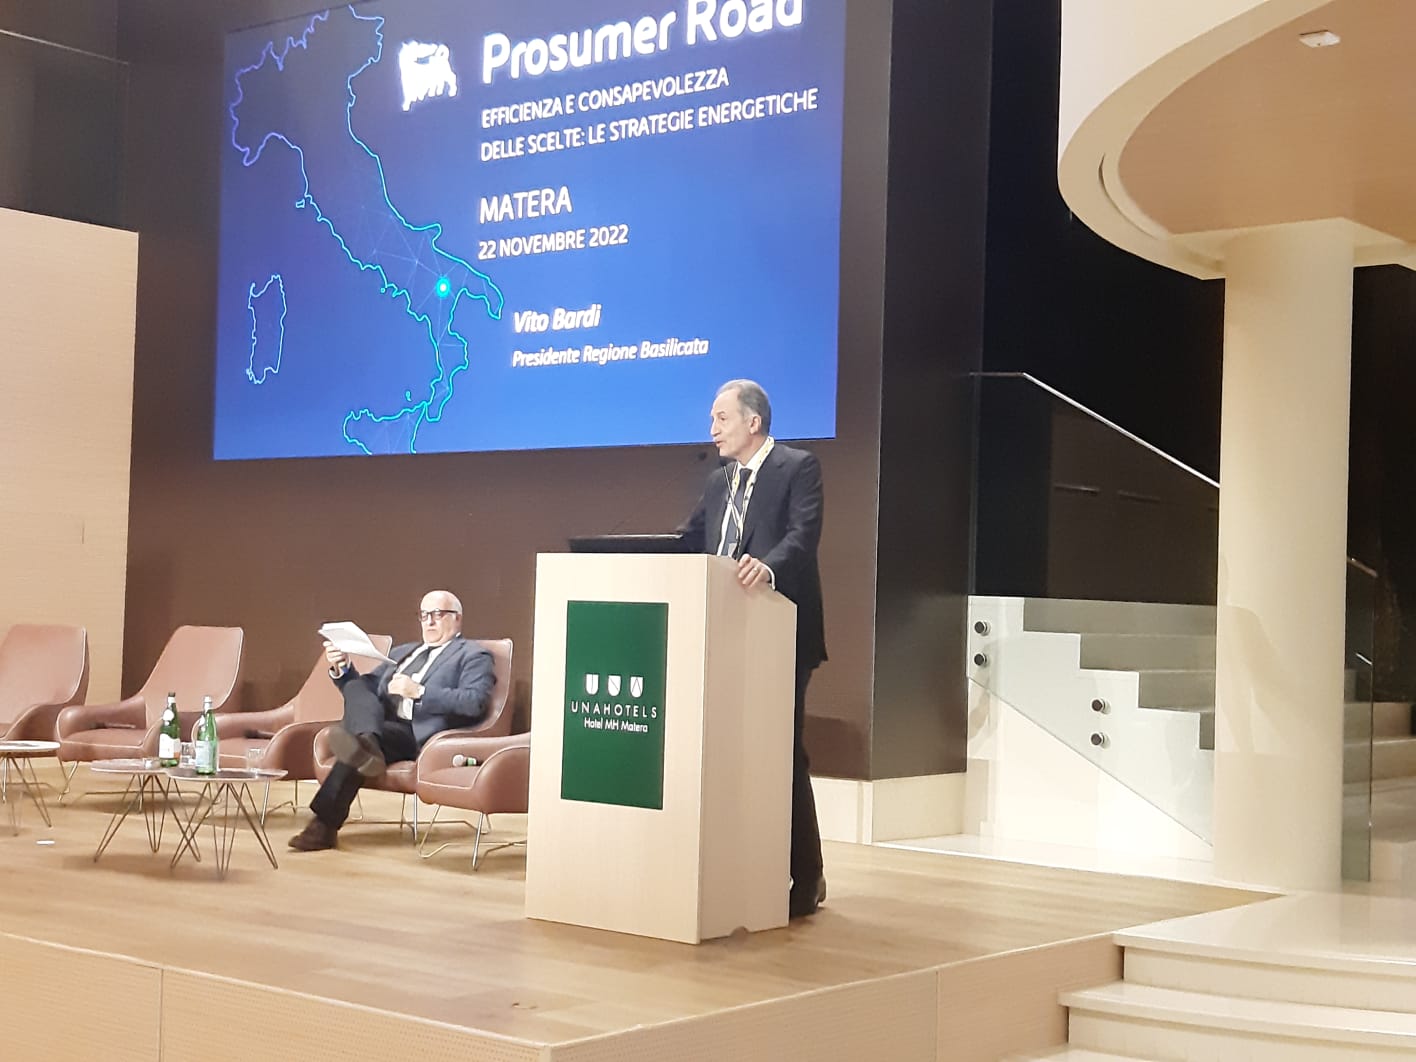 Prosumer Road “Efficienza e consapevolezza delle scelte: le strategie energetiche”: l’intervento del Presidente Vito Bardi